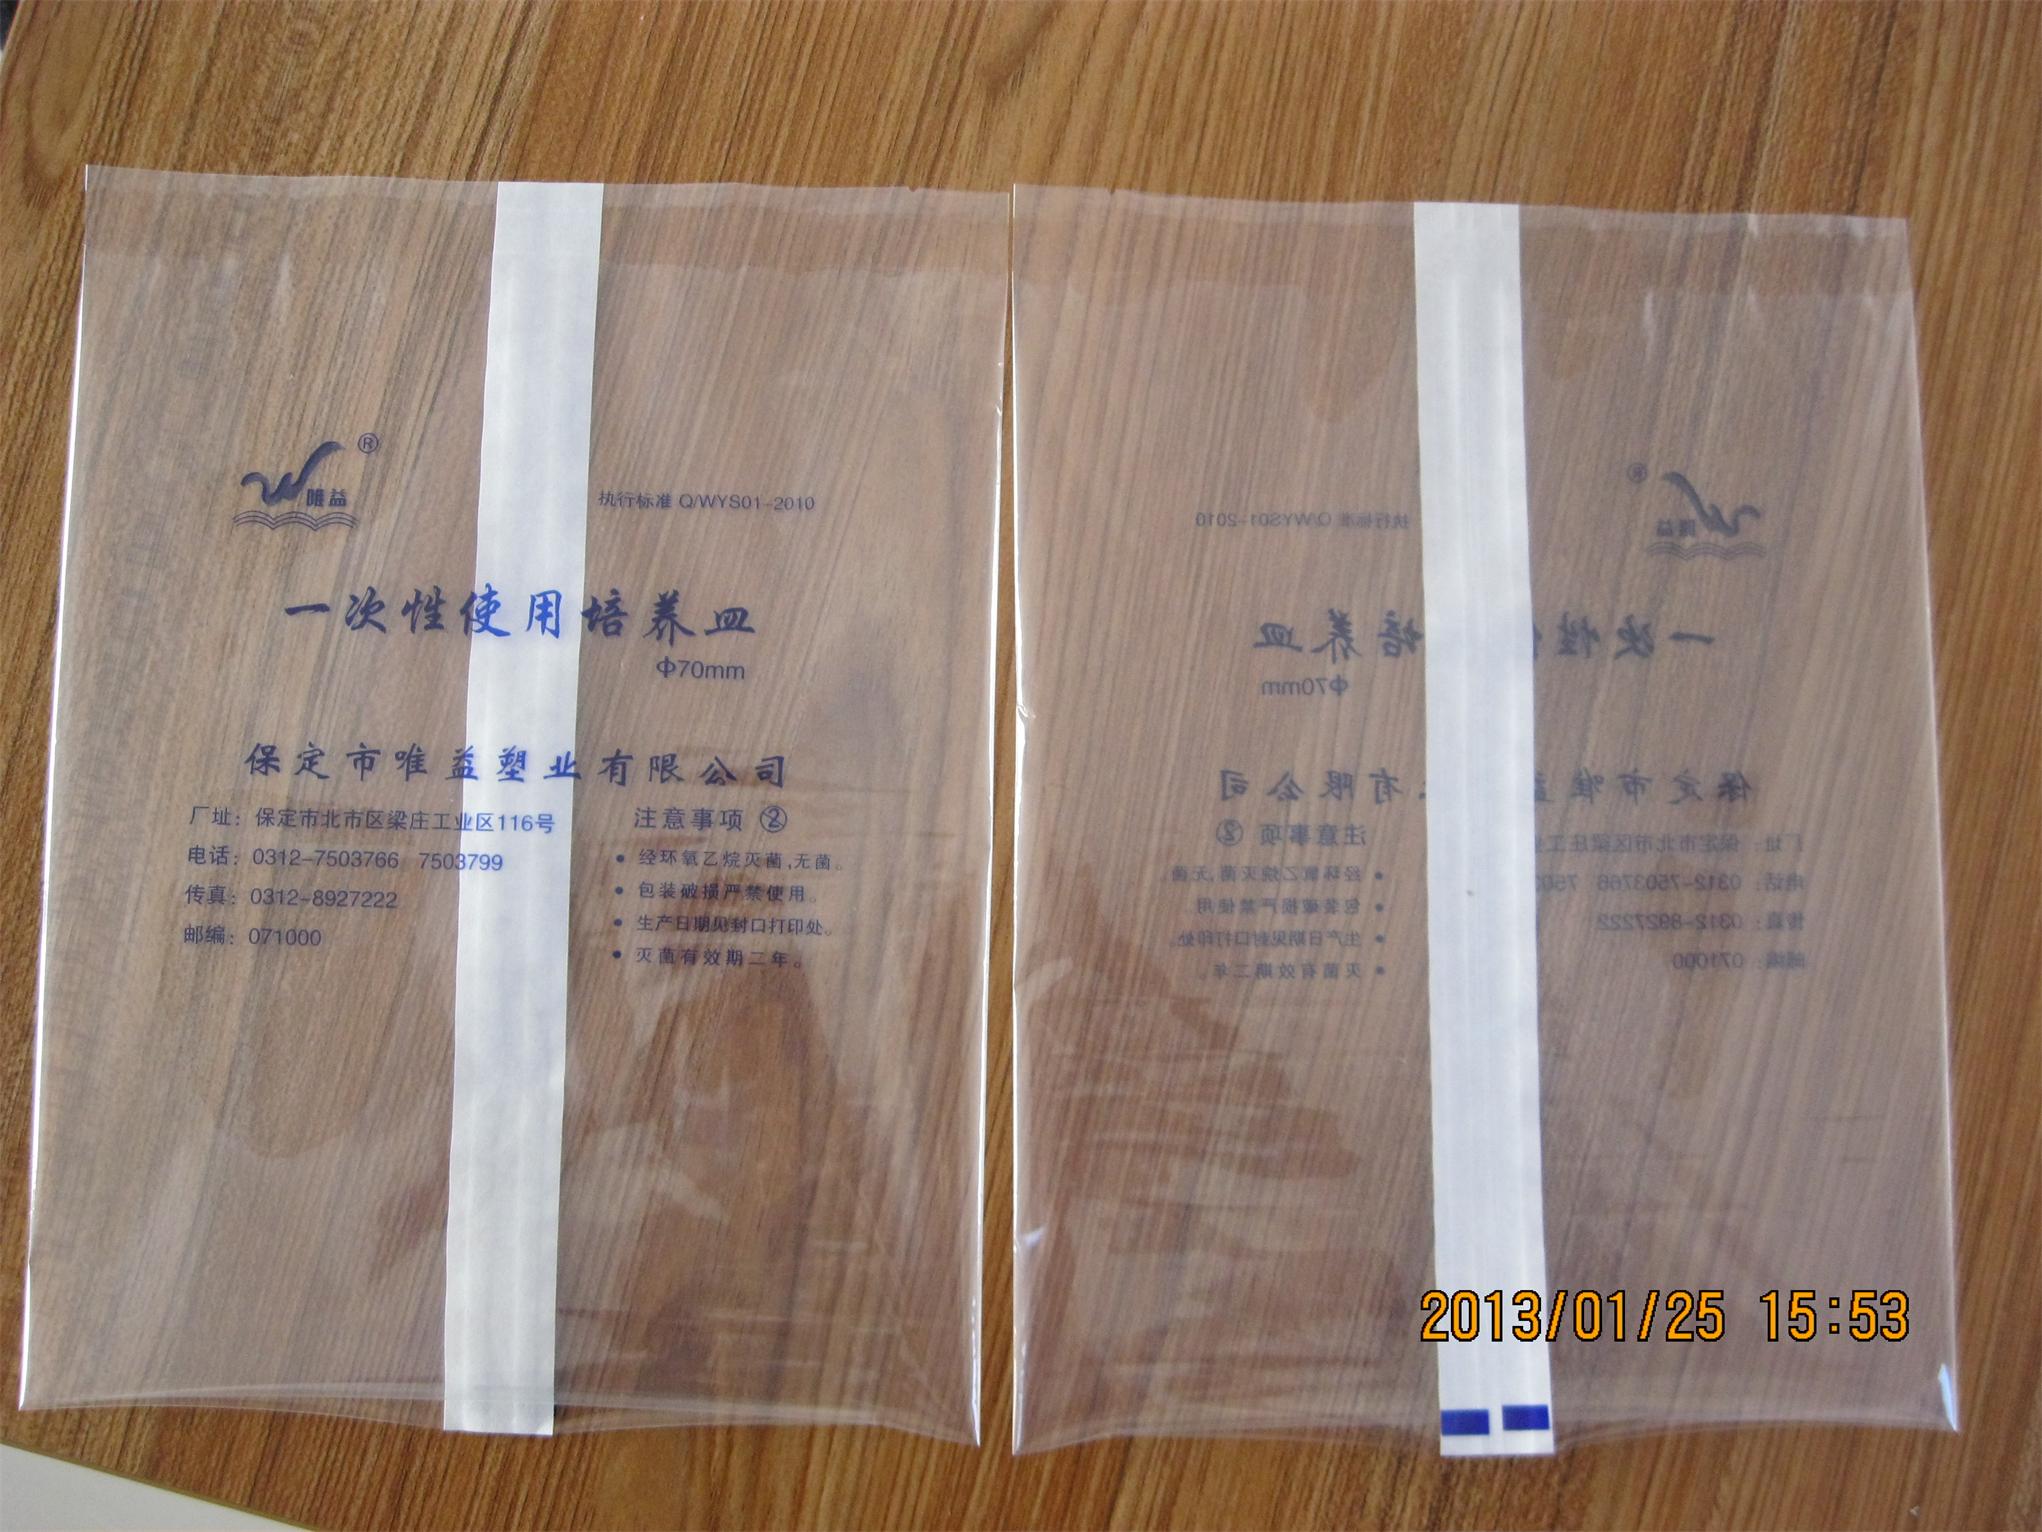 医用立体透析纸条袋、铝箔背封条袋、镀铝背封条袋、生产厂家直销